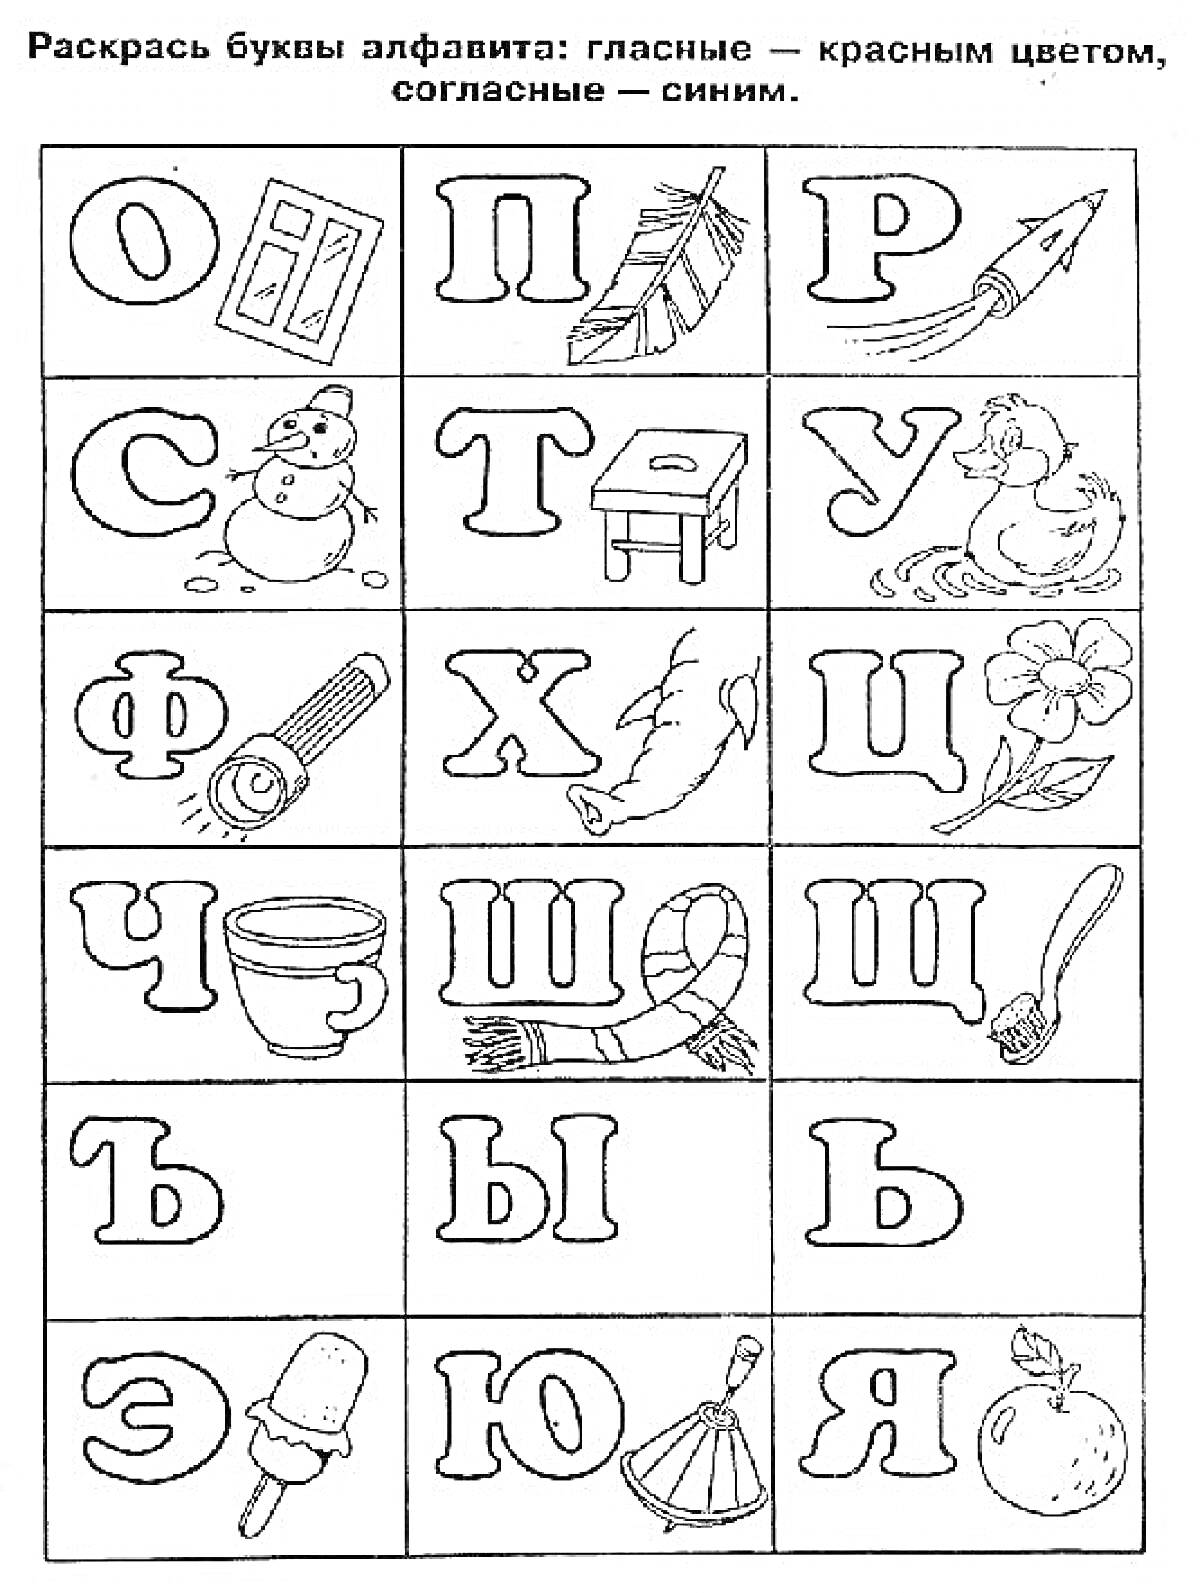 Раскраска с буквами русского алфавита и соответствующими объектами